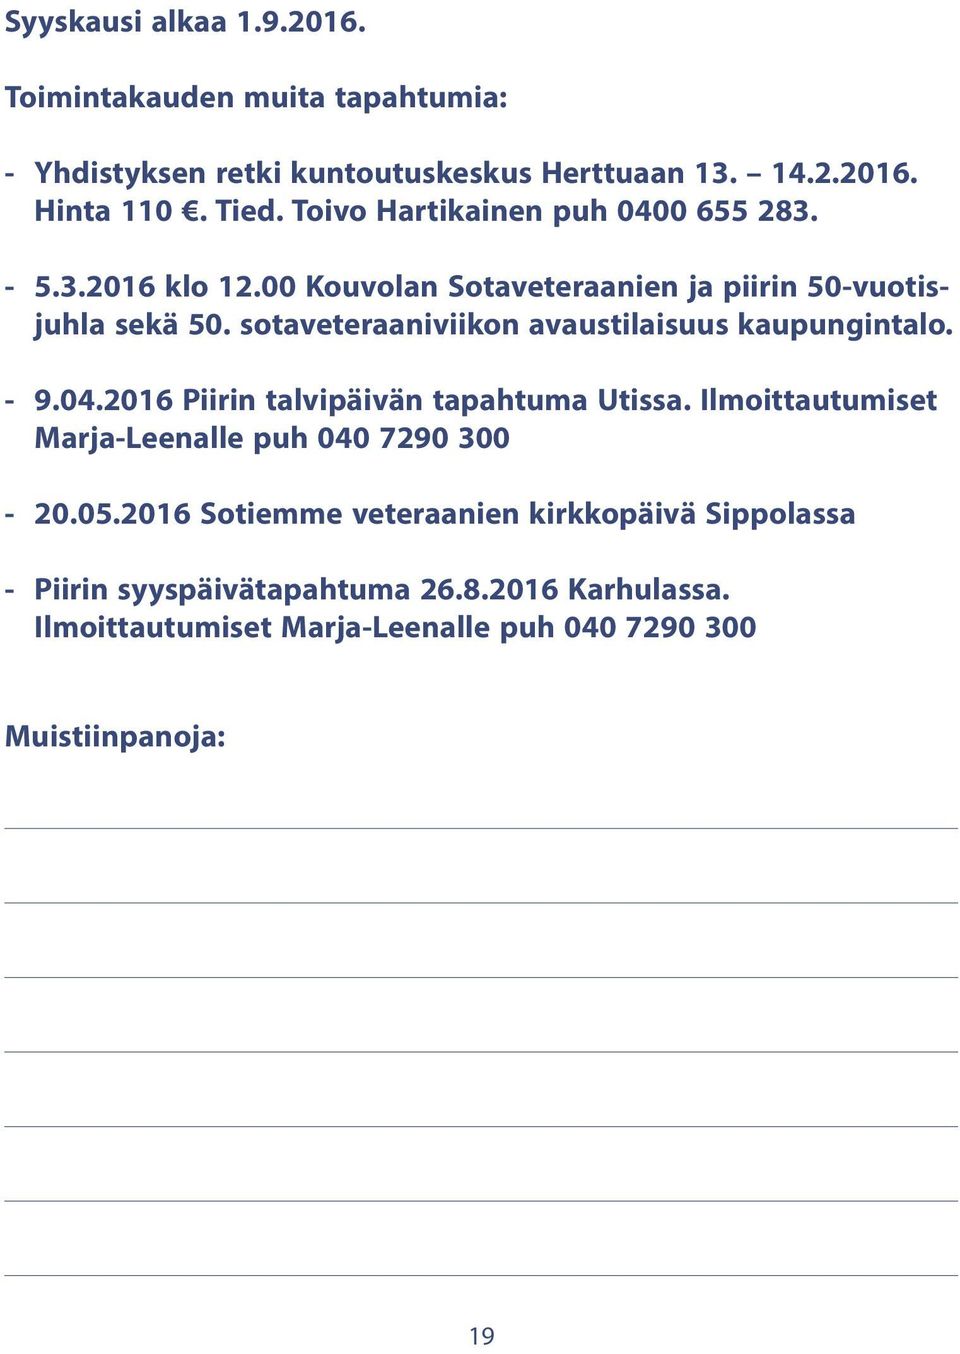 sotaveteraaniviikon avaustilaisuus kaupungintalo. - 9.04.2016 Piirin talvipäivän tapahtuma Utissa.